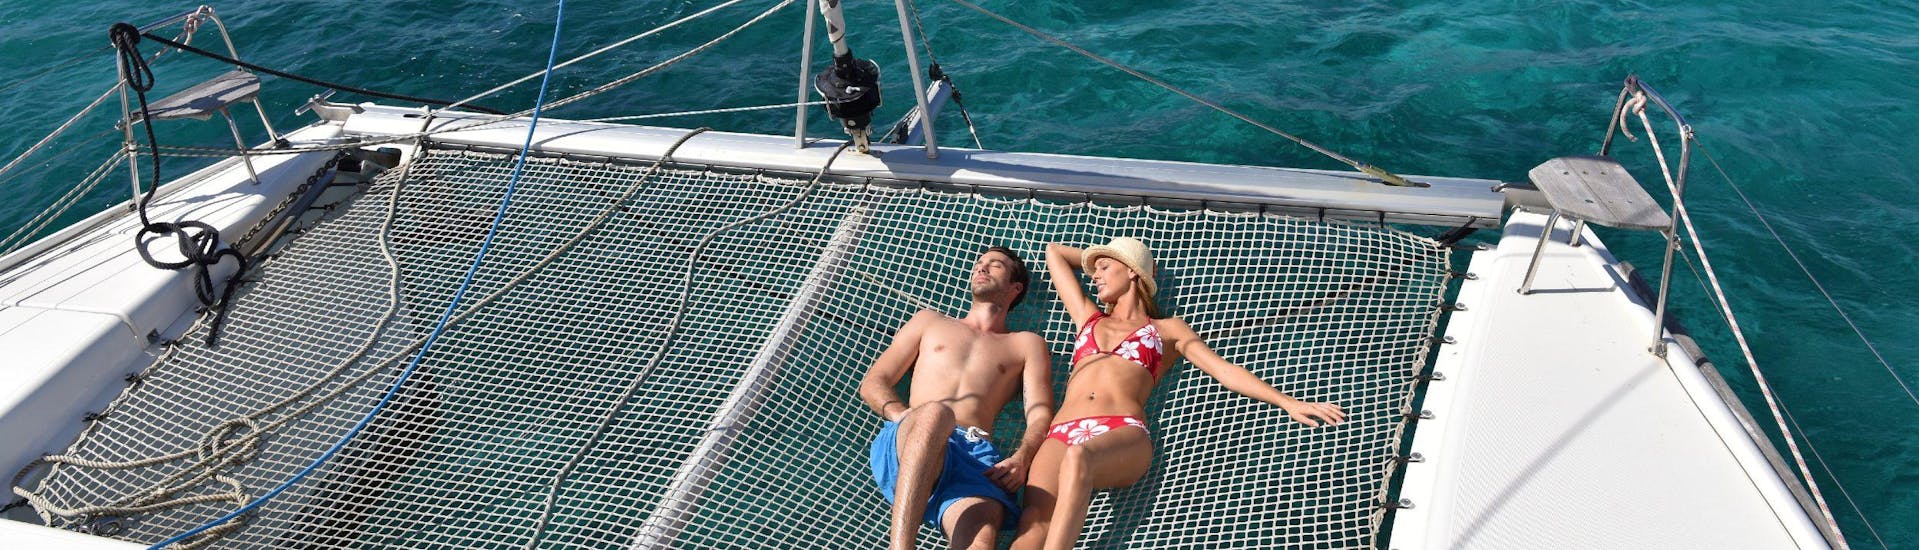 Una coppia sta prendendo il sole su un catamarano.